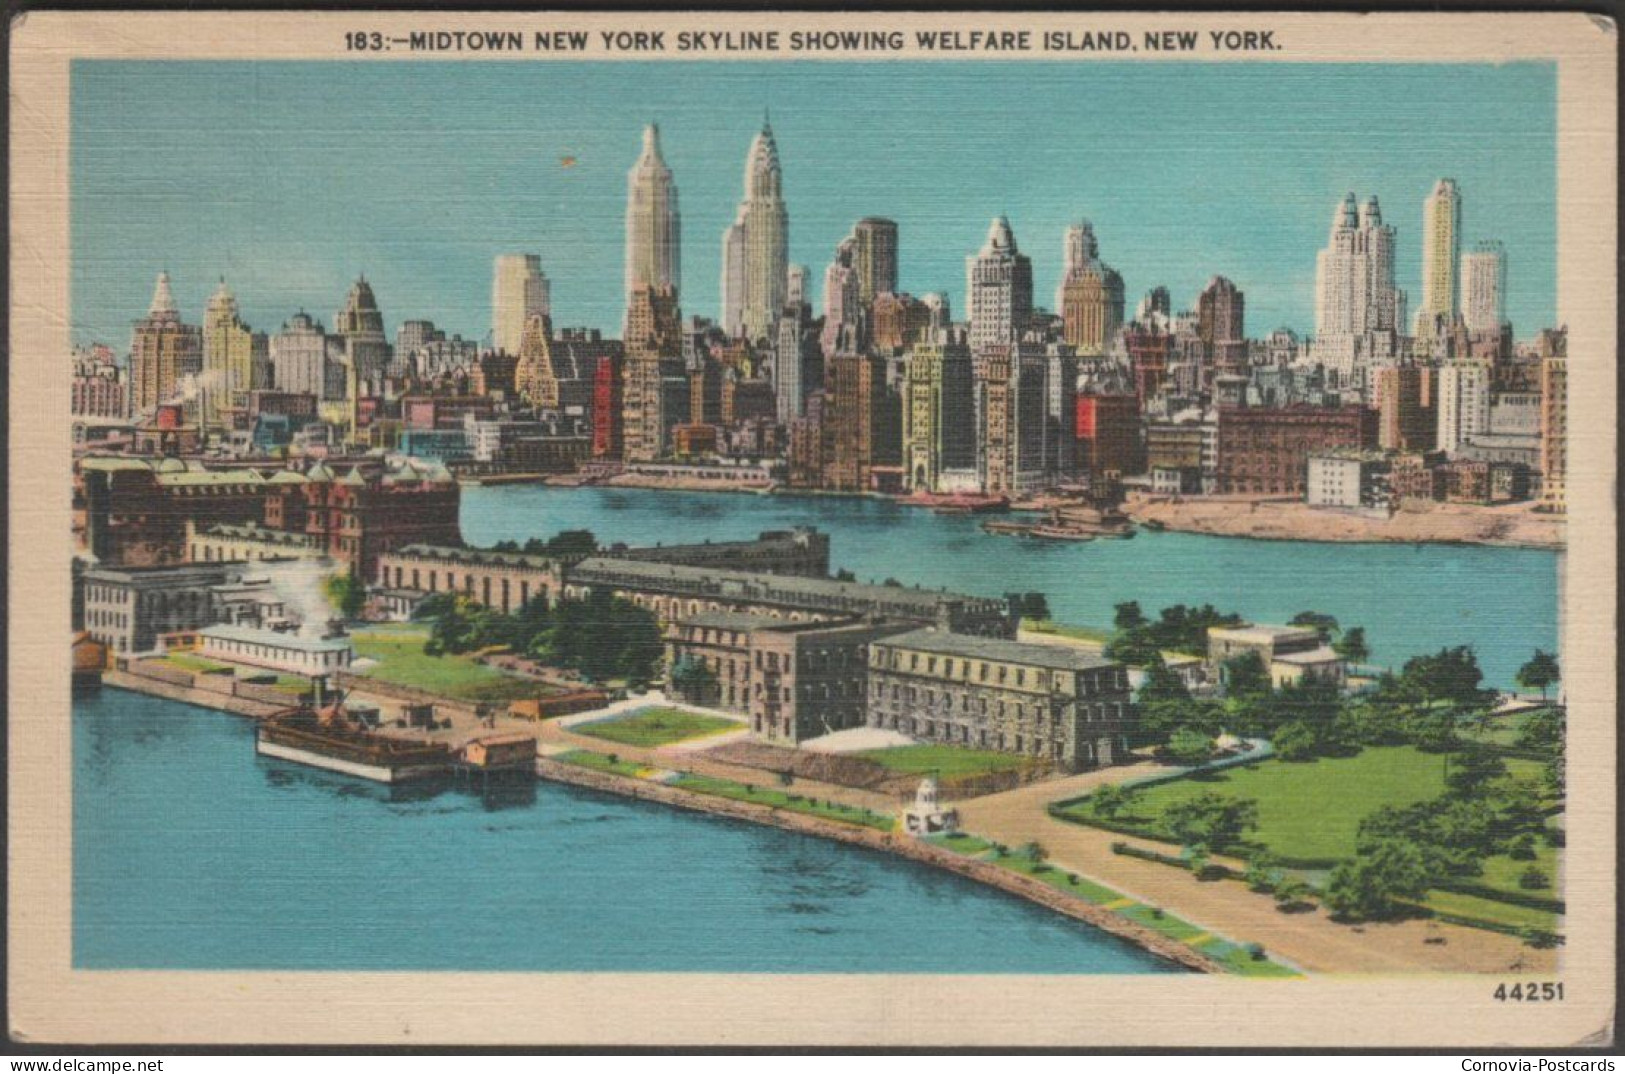 Midtown New York Skyline Showing Welfare Island, New York, 1942 - Manhattan PCP Co Postcard - Panoramische Zichten, Meerdere Zichten